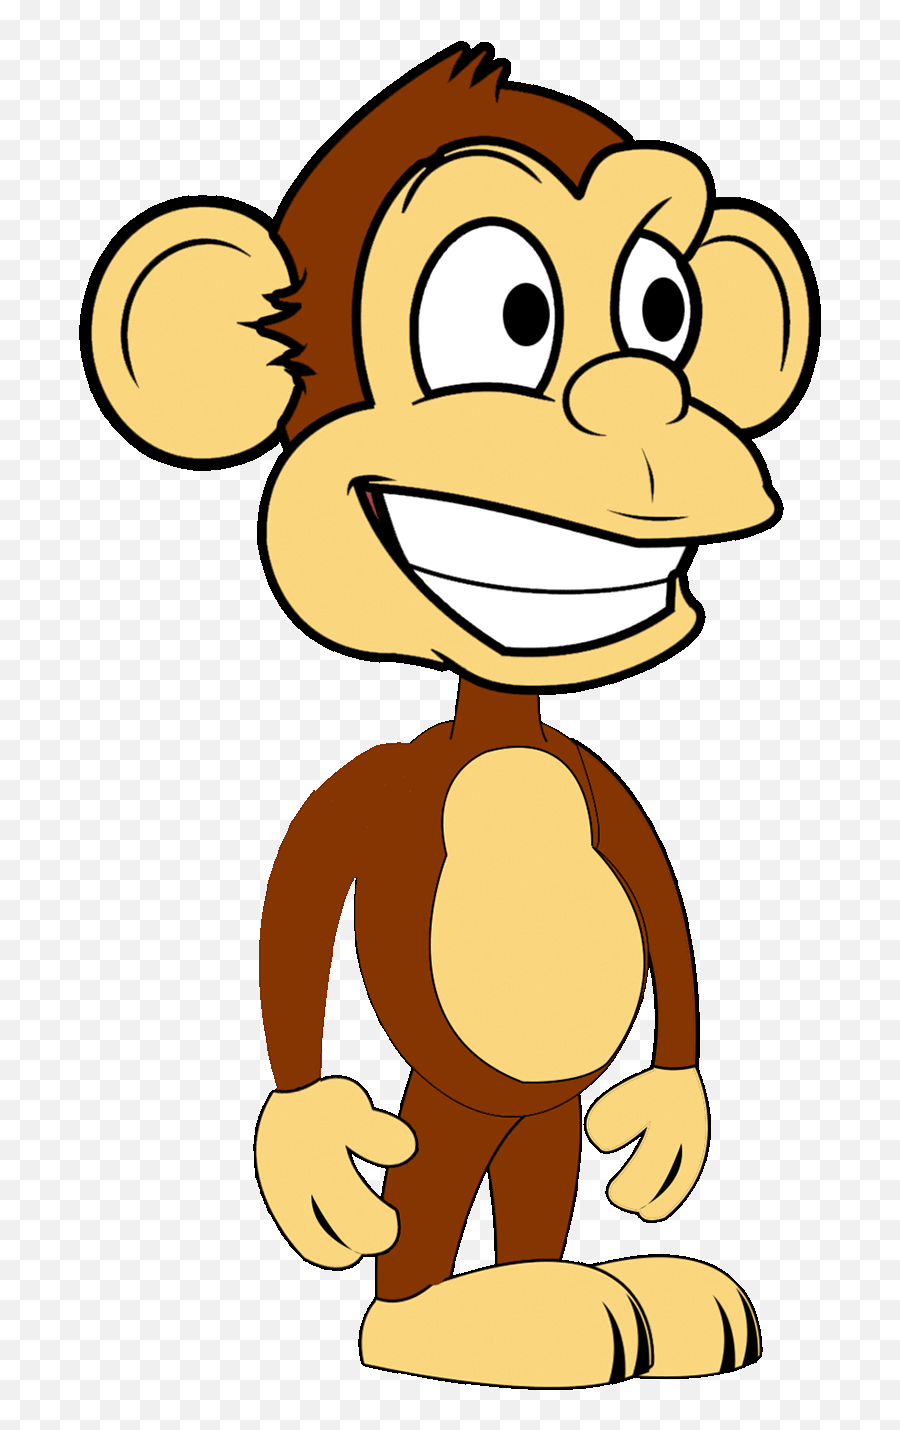 Animated Monkey Waving - Monkey Cartoon Images Gif Emoji,Skype Monkey Emoticon